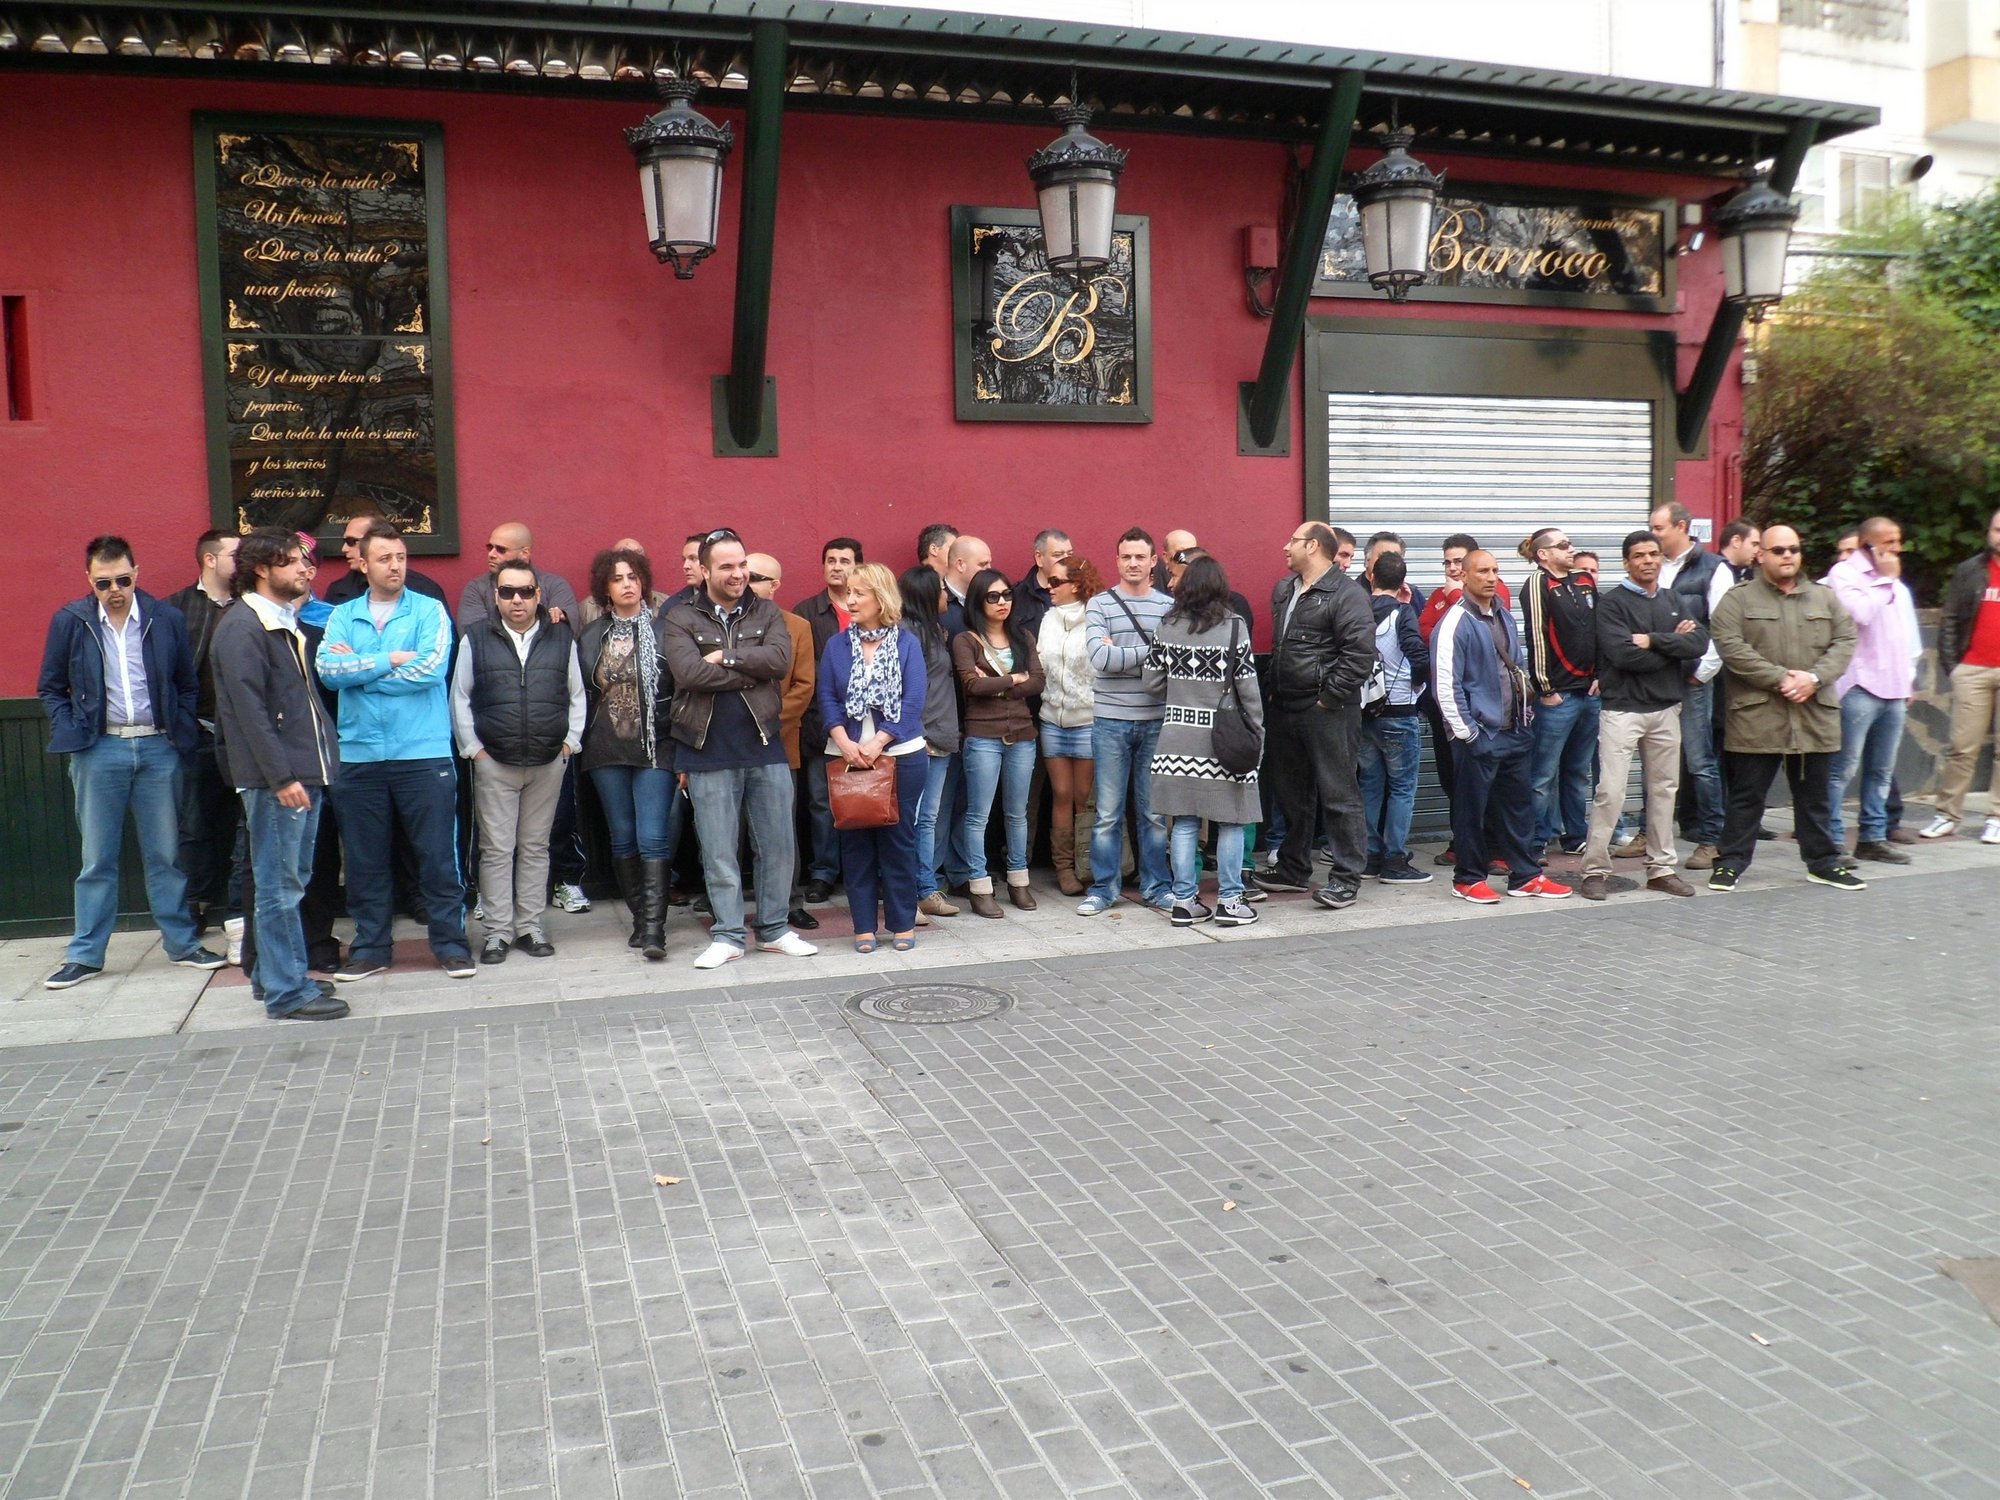 Unas 50 personas protestan en Cáceres por la clausura de ocho bares de copas en La Madrila